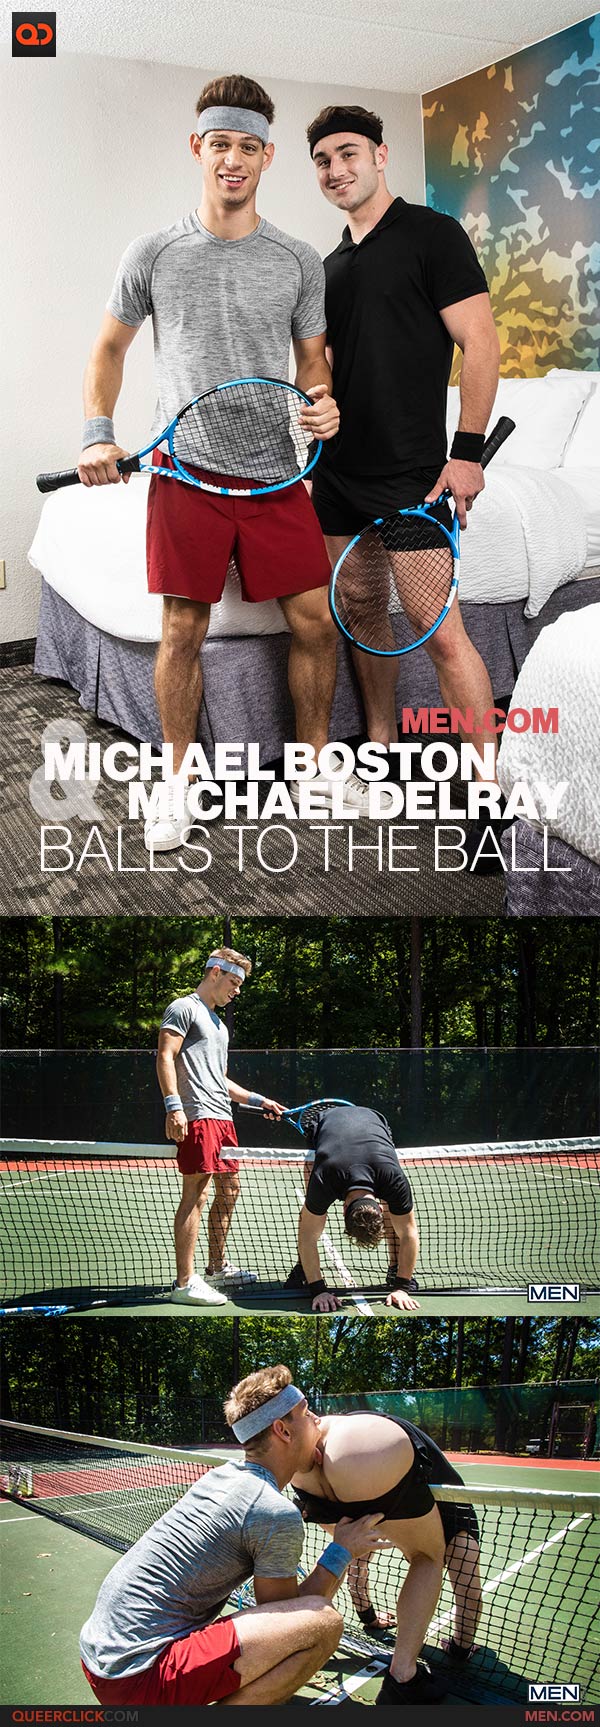 Men.com: Michael DelRay and Michael Boston